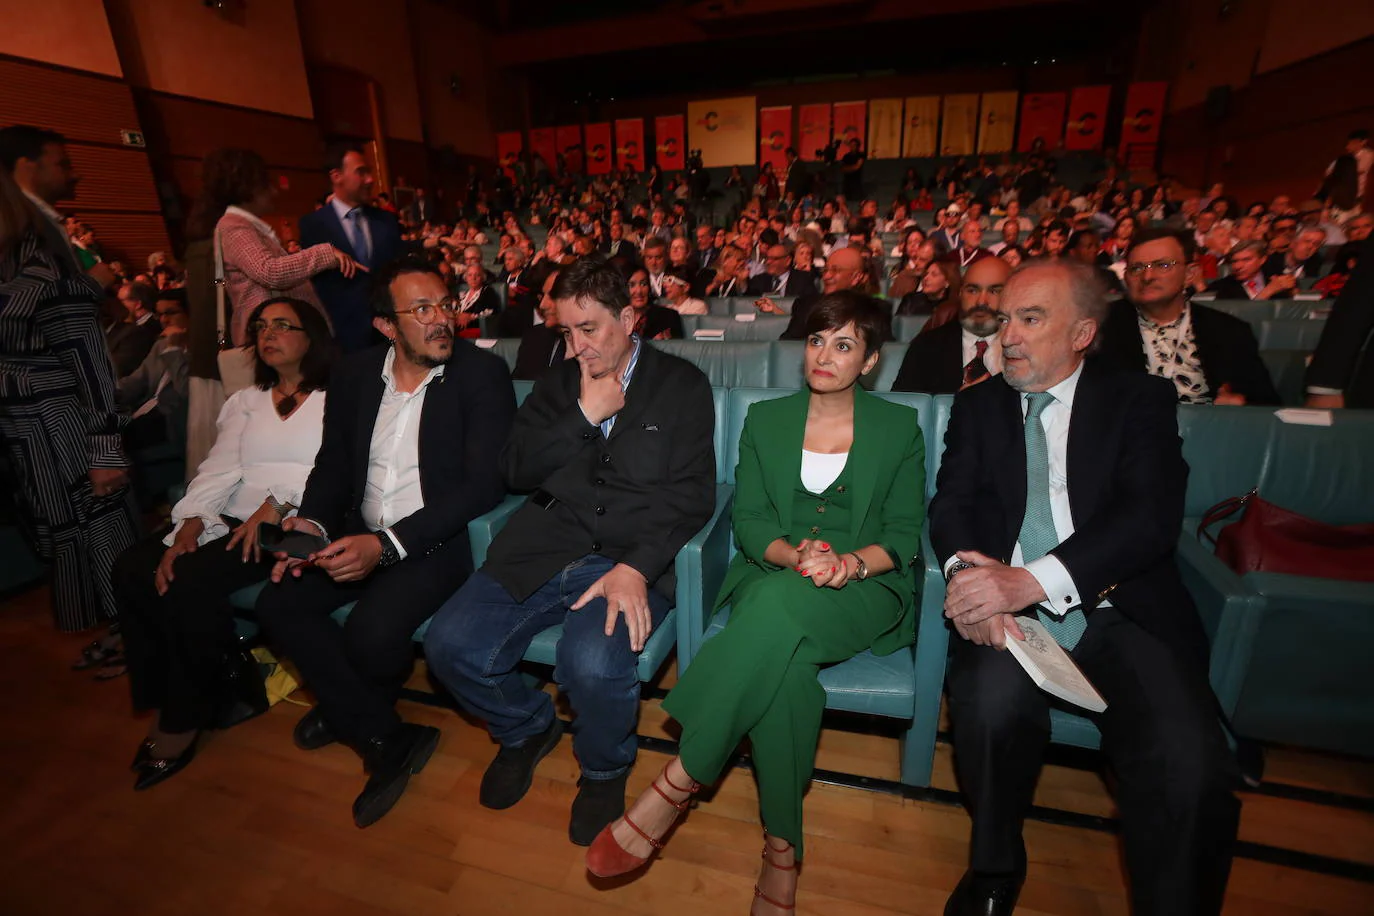 Fotos: Así ha sido la clausura del Congreso de la Lengua en Cádiz